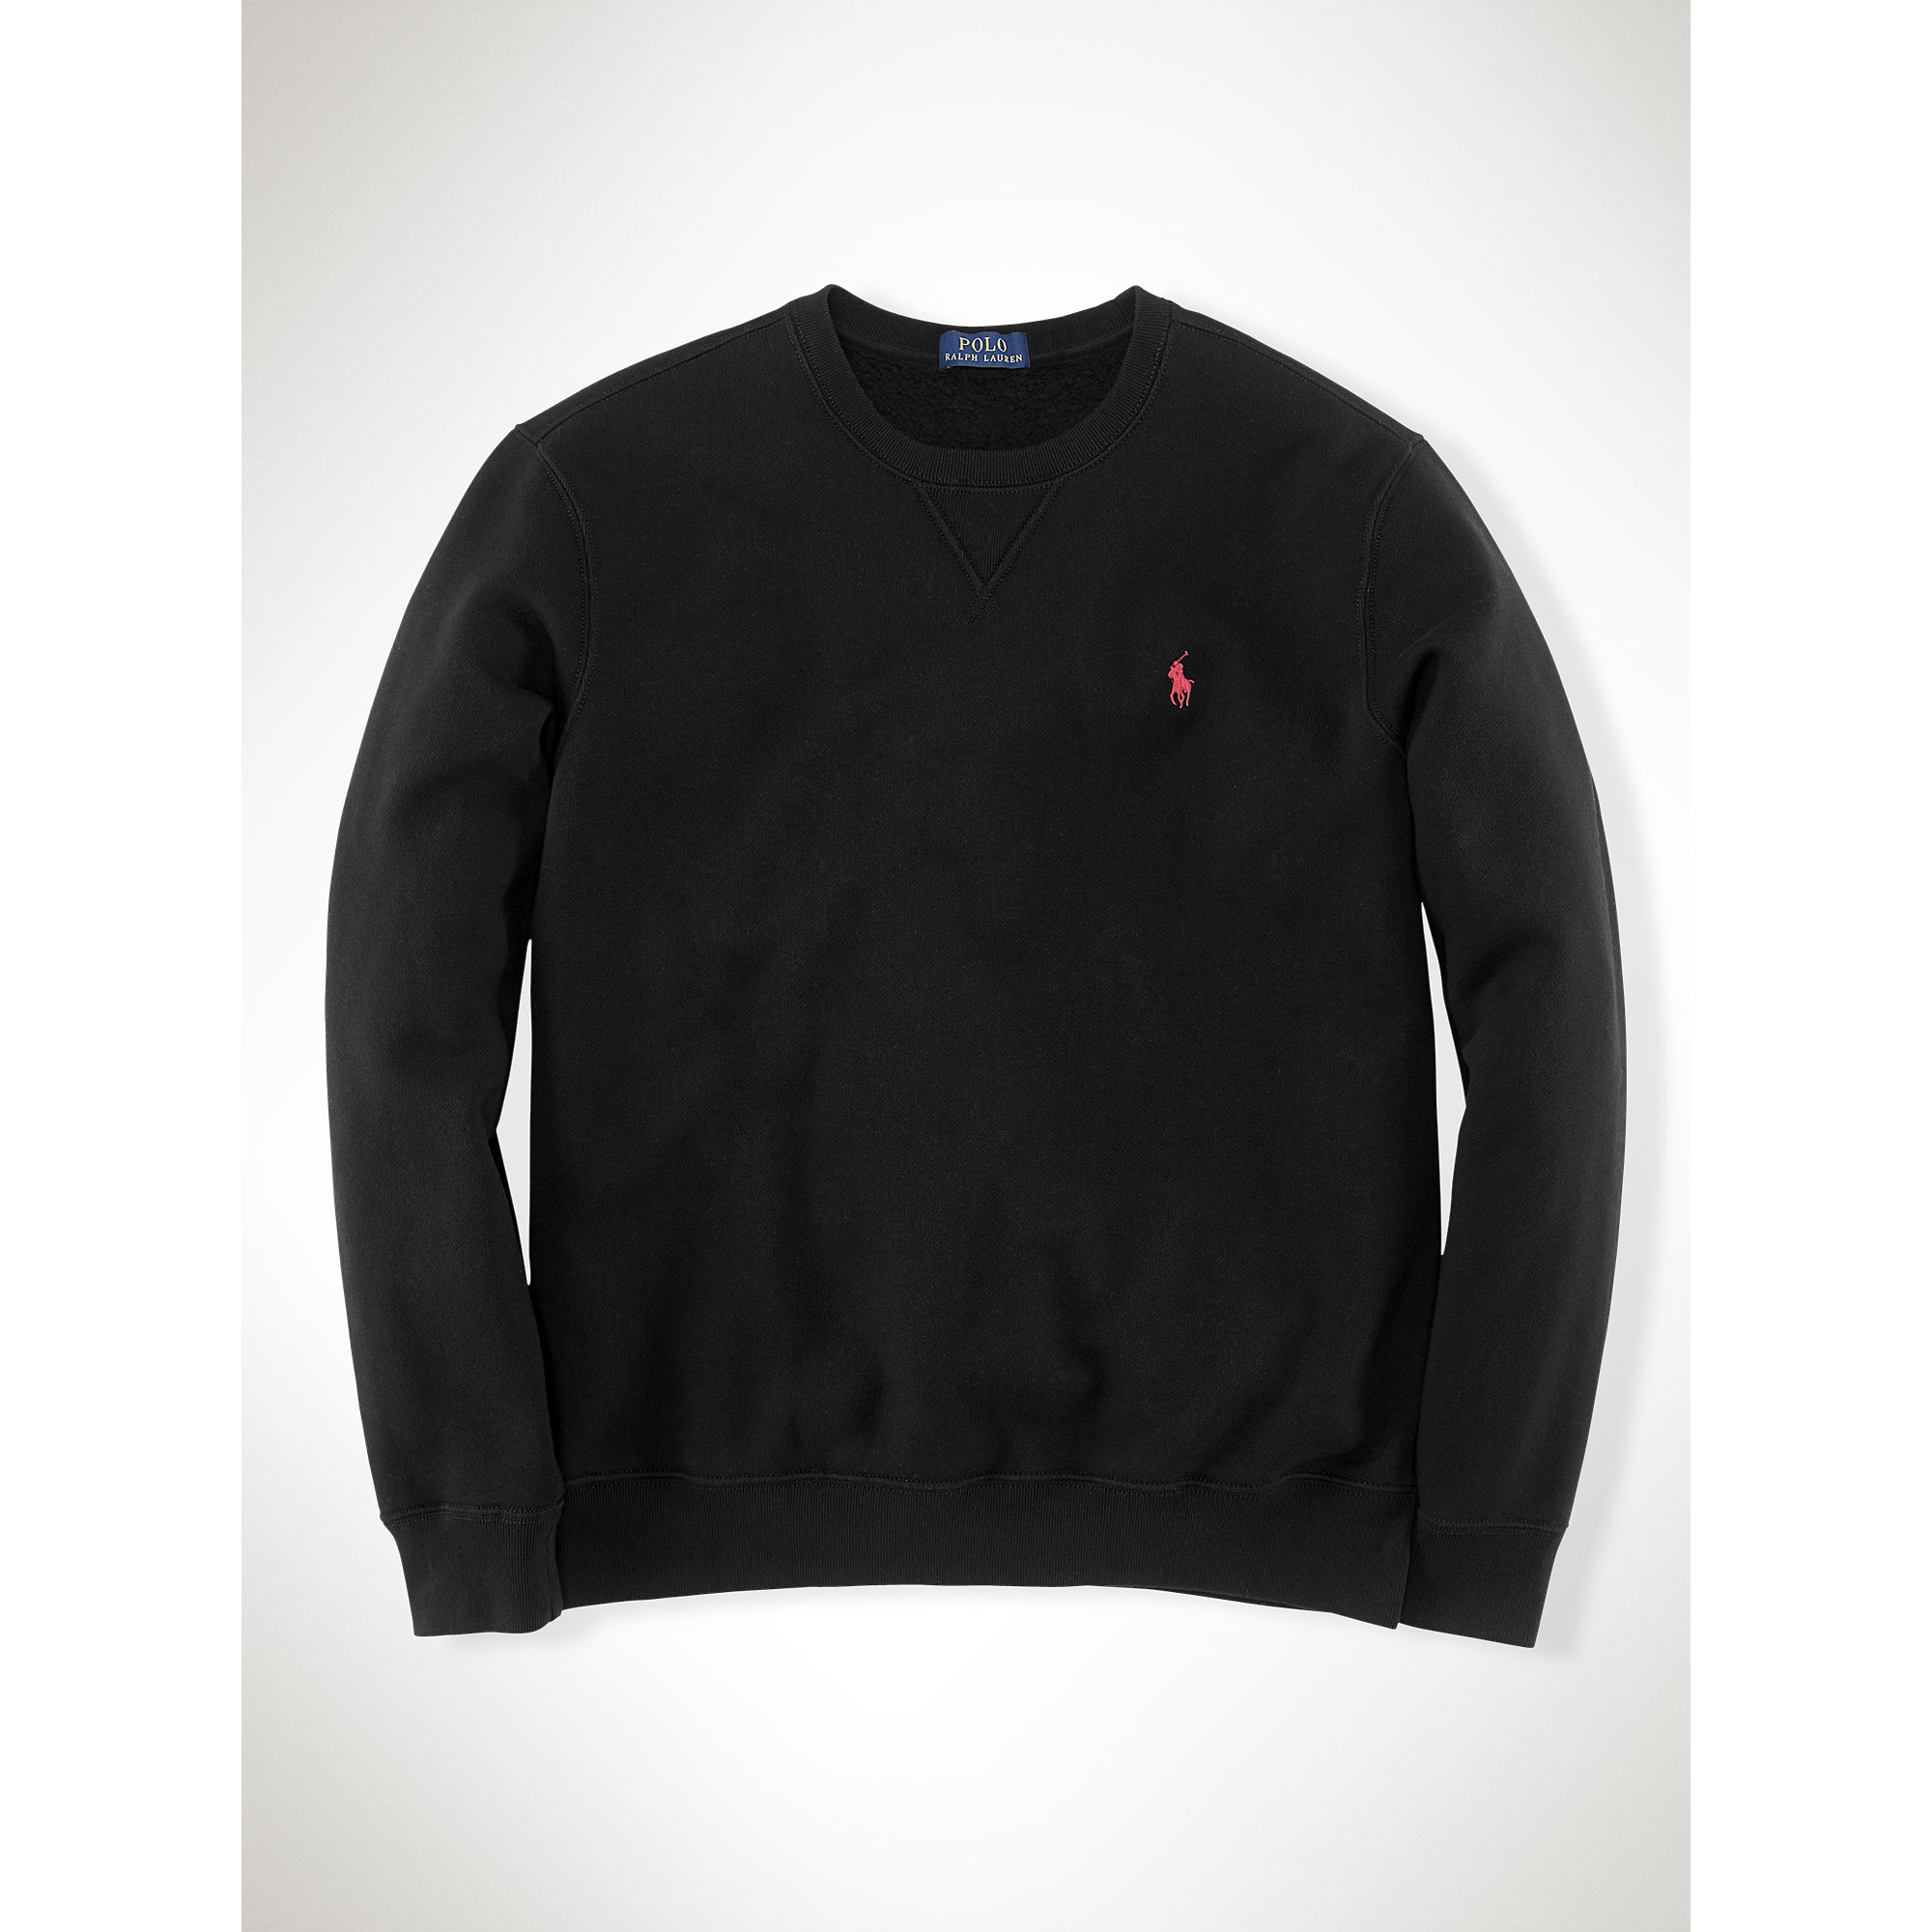 Lyst - Polo Ralph Lauren Cotton-blend Fleece Sweatshirt in Black for Men